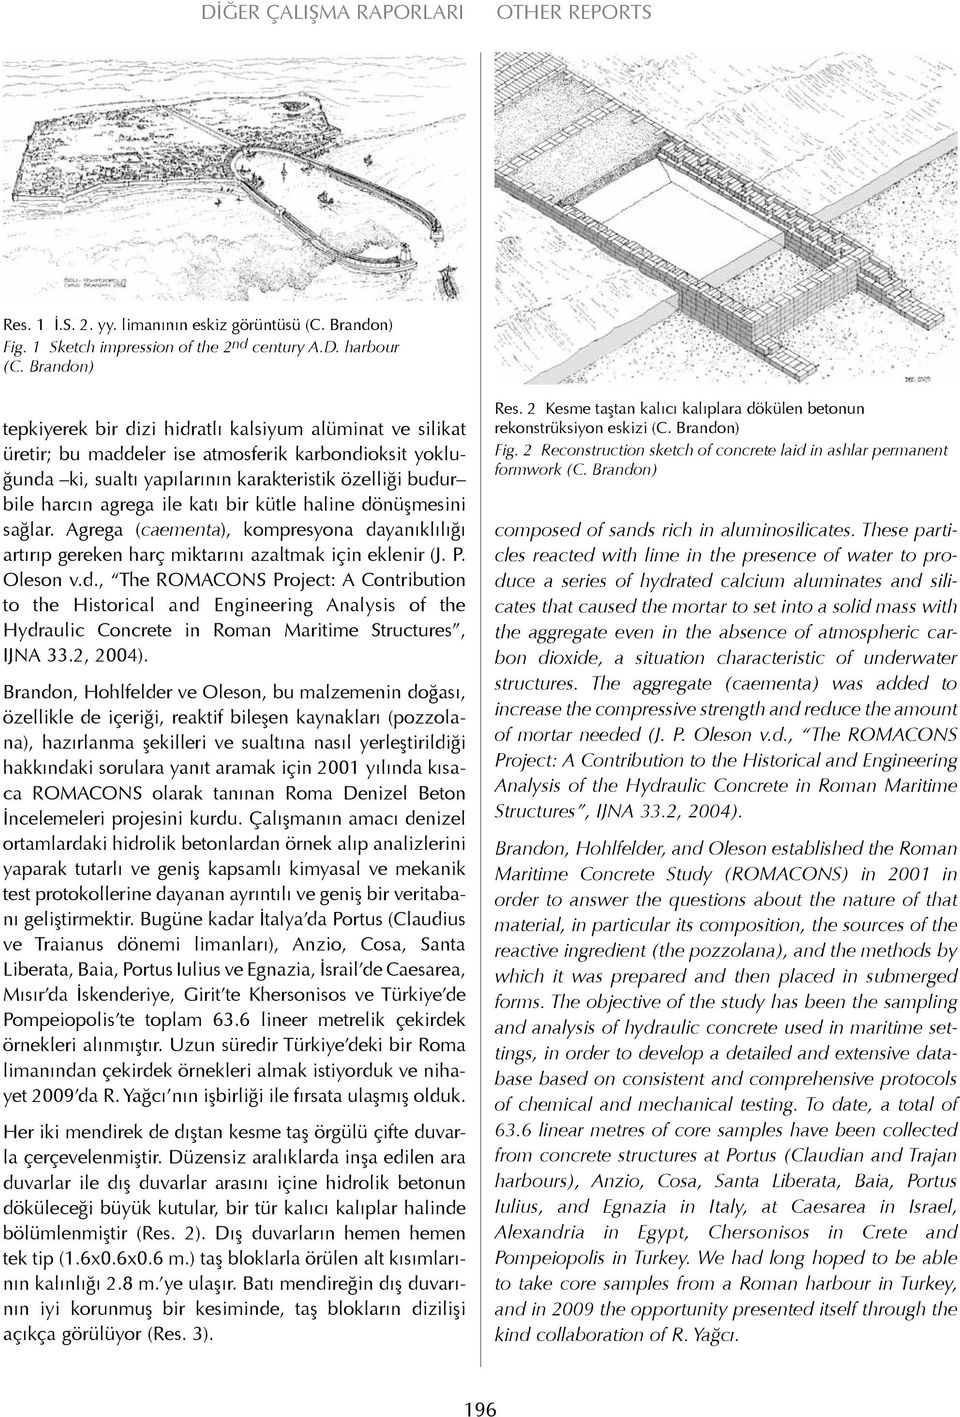 ile katı bir kütle haline dönüşmesini sağlar. Agrega (caementa), kompresyona dayanıklılığı artırıp gereken harç miktarını azaltmak için eklenir (J. P. Oleson v.d., The ROMACONS Project: A Contribution to the Historical and Engineering Analysis of the Hydraulic Concrete in Roman Maritime Structures, IJNA 33.